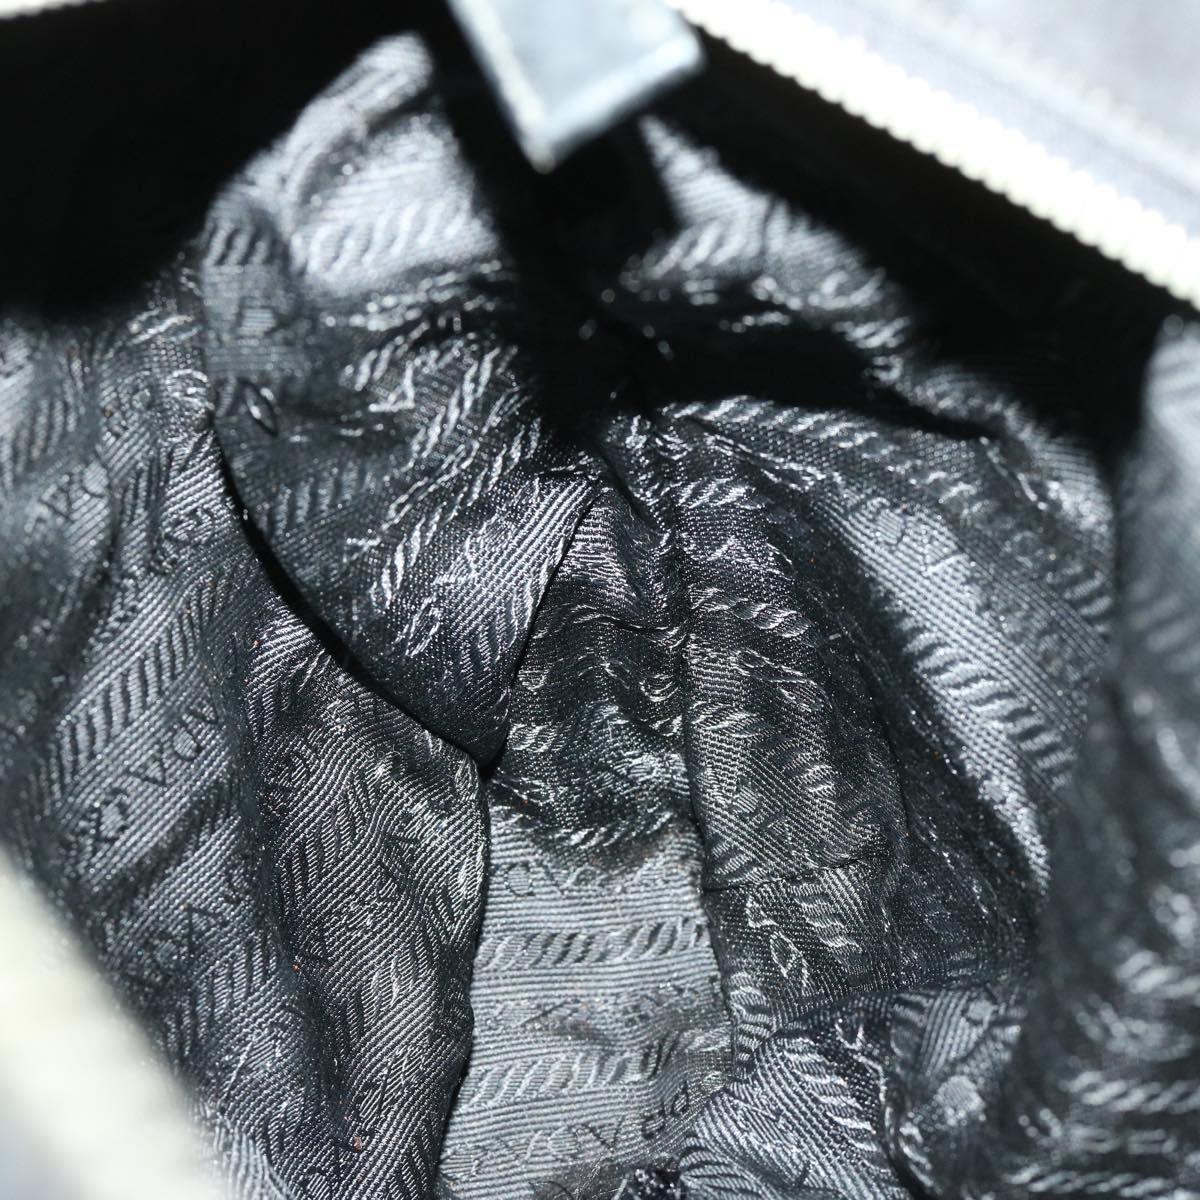 PRADA Tote Bag Nylon Black Auth hk1117